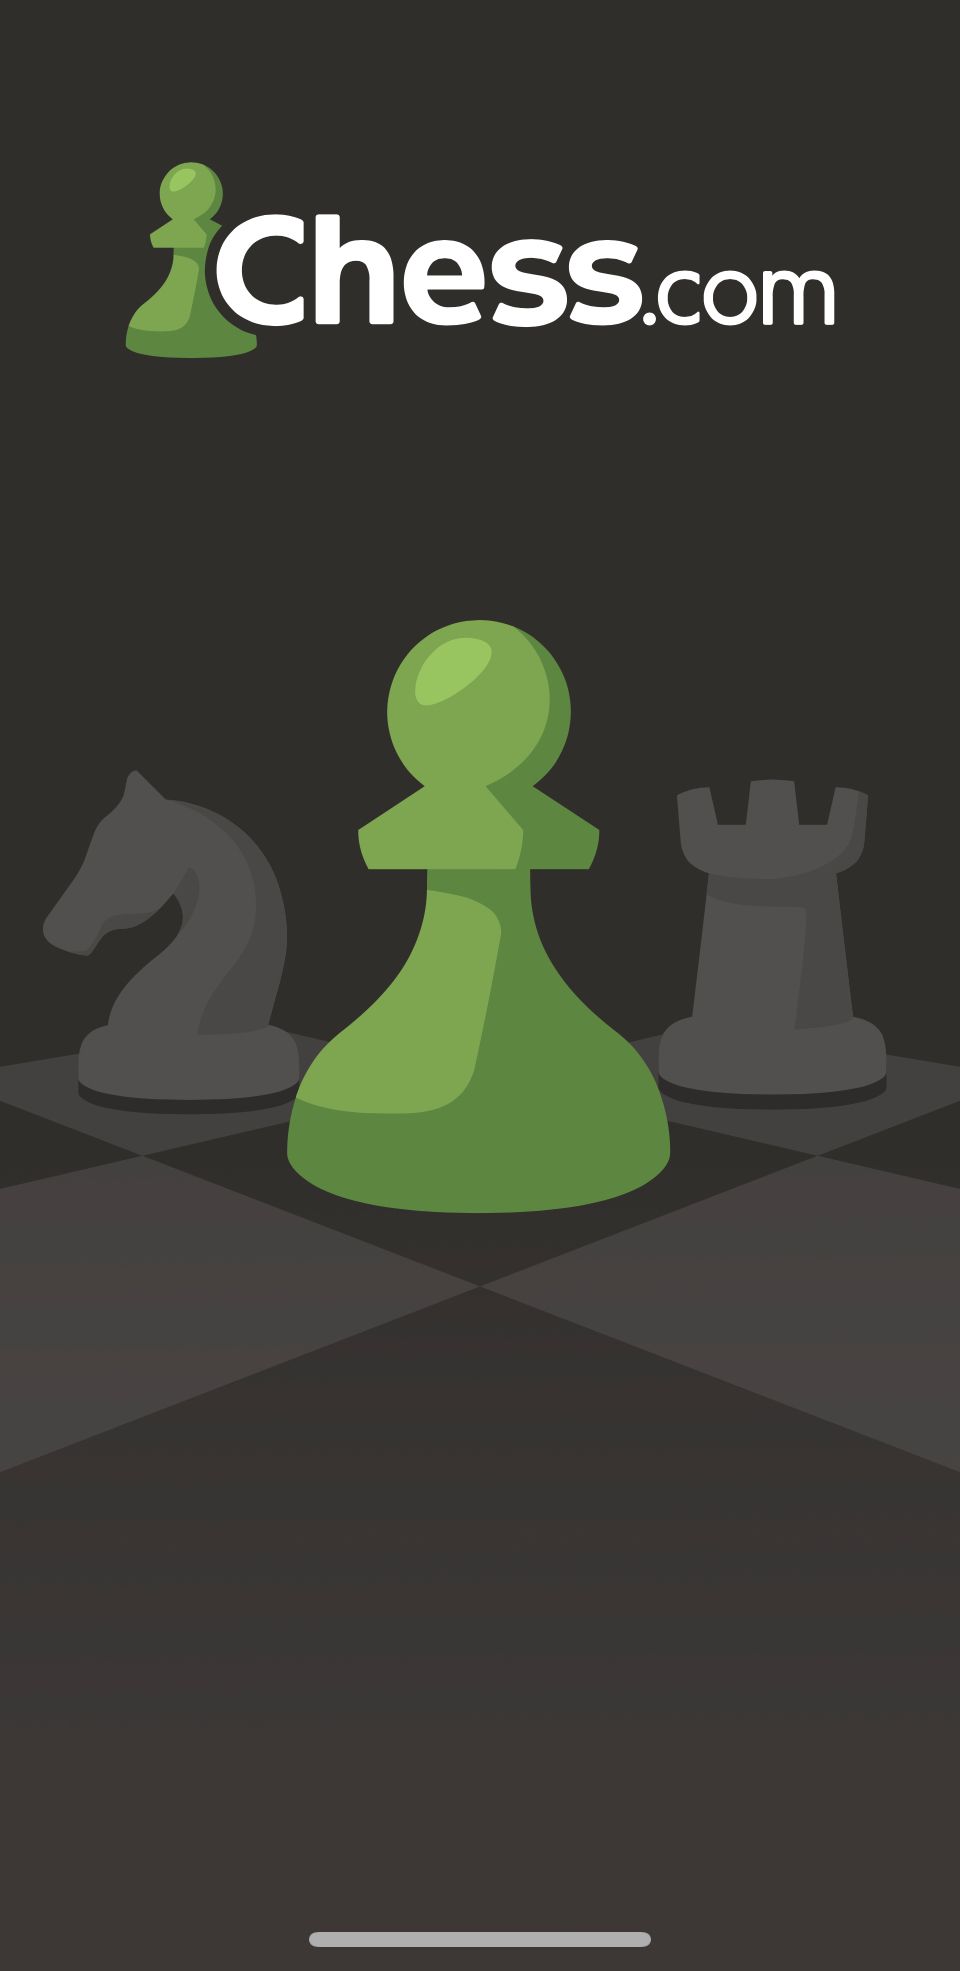 chesscom logo